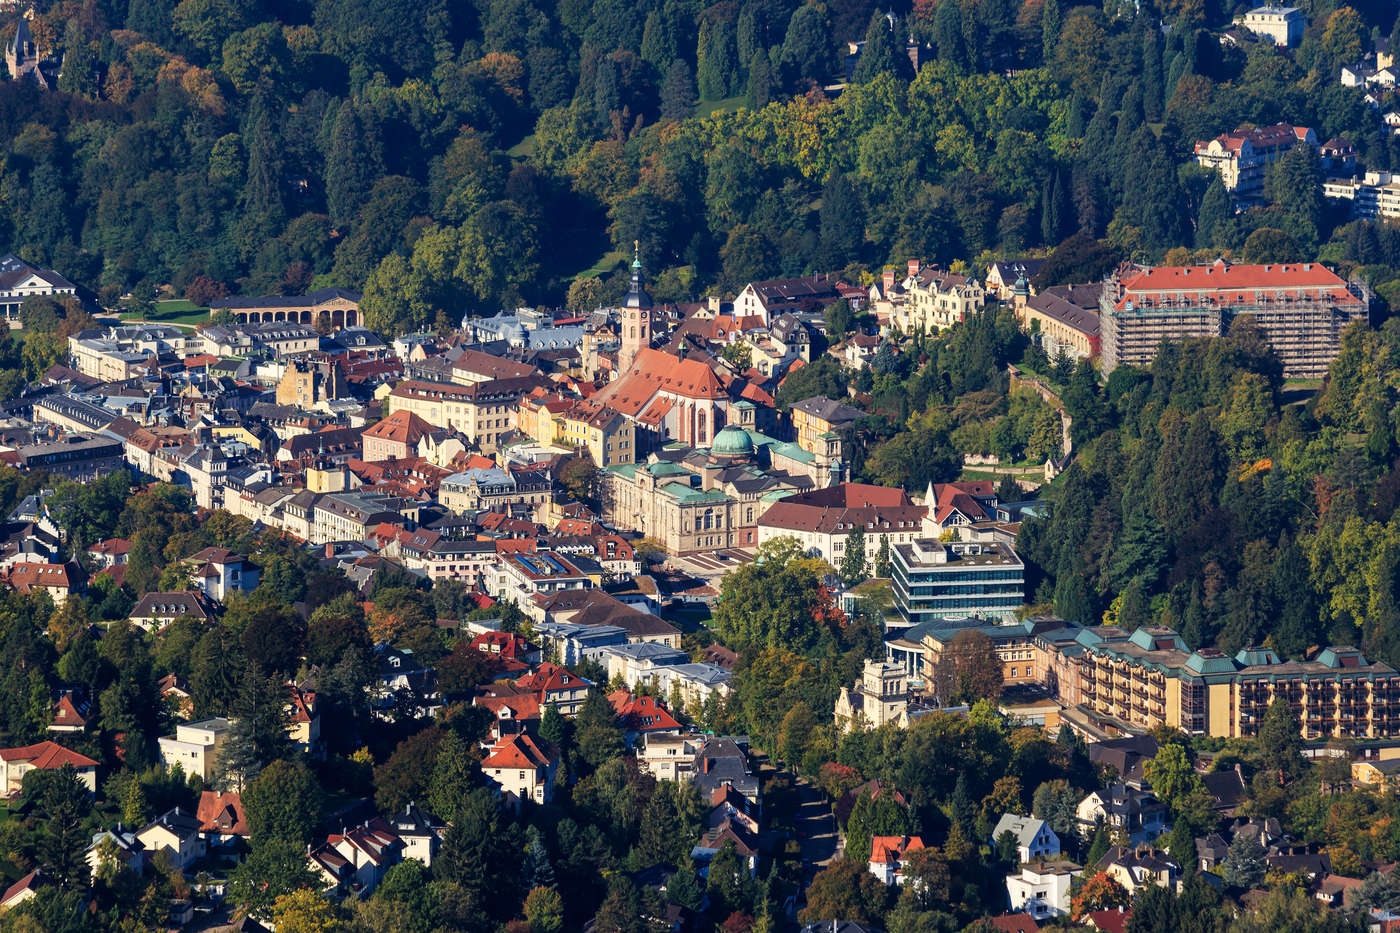 Objevte svůj kousek Baden-Badenu.